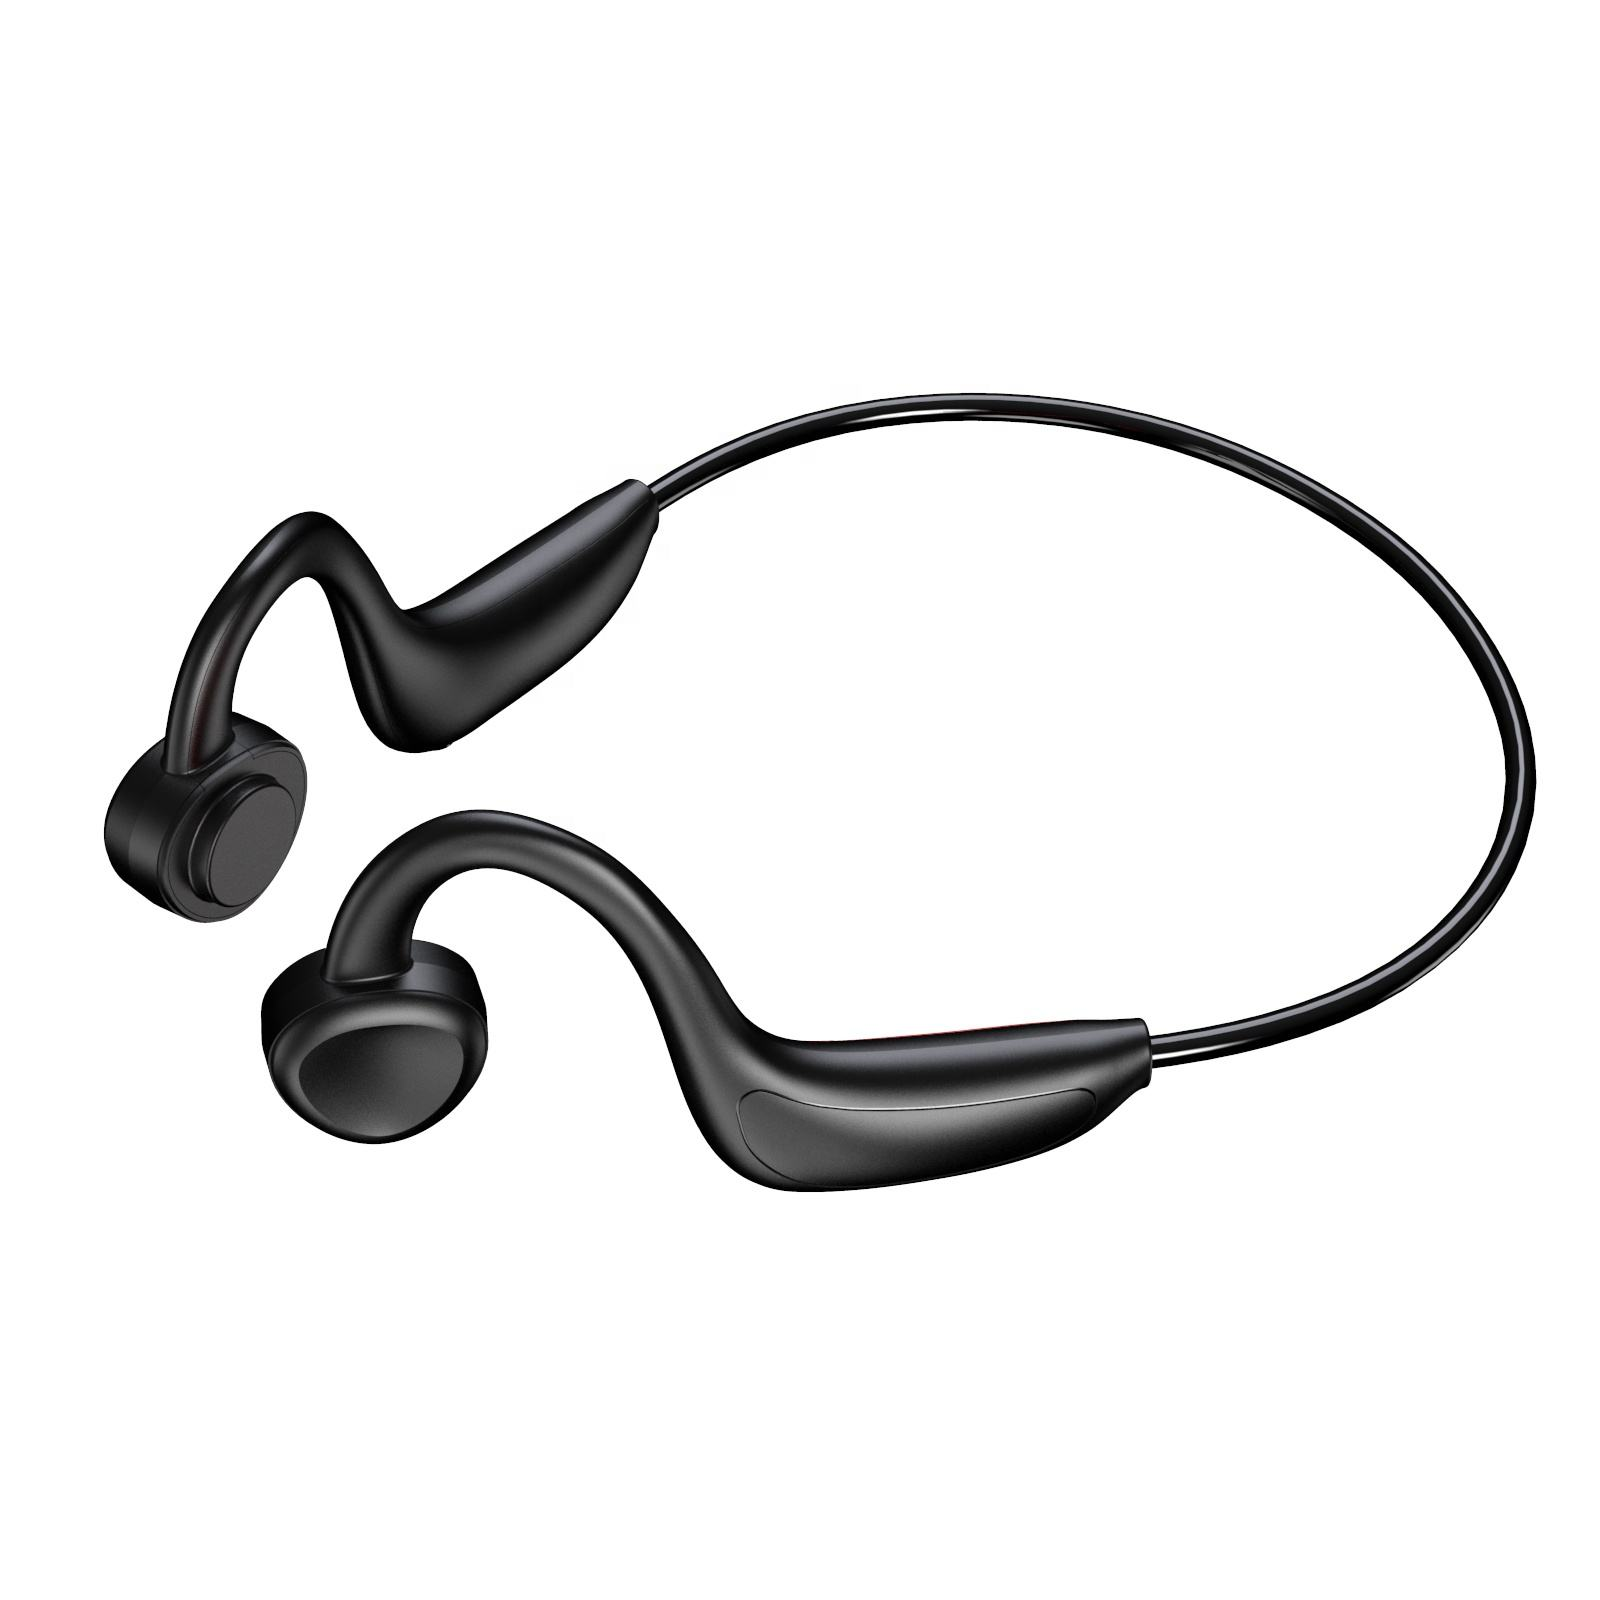 INF Luftleitungs-Funkkopfhörer, offener Kopfhörer, Gehörschutz, In-ear Kopfhörer schwarz